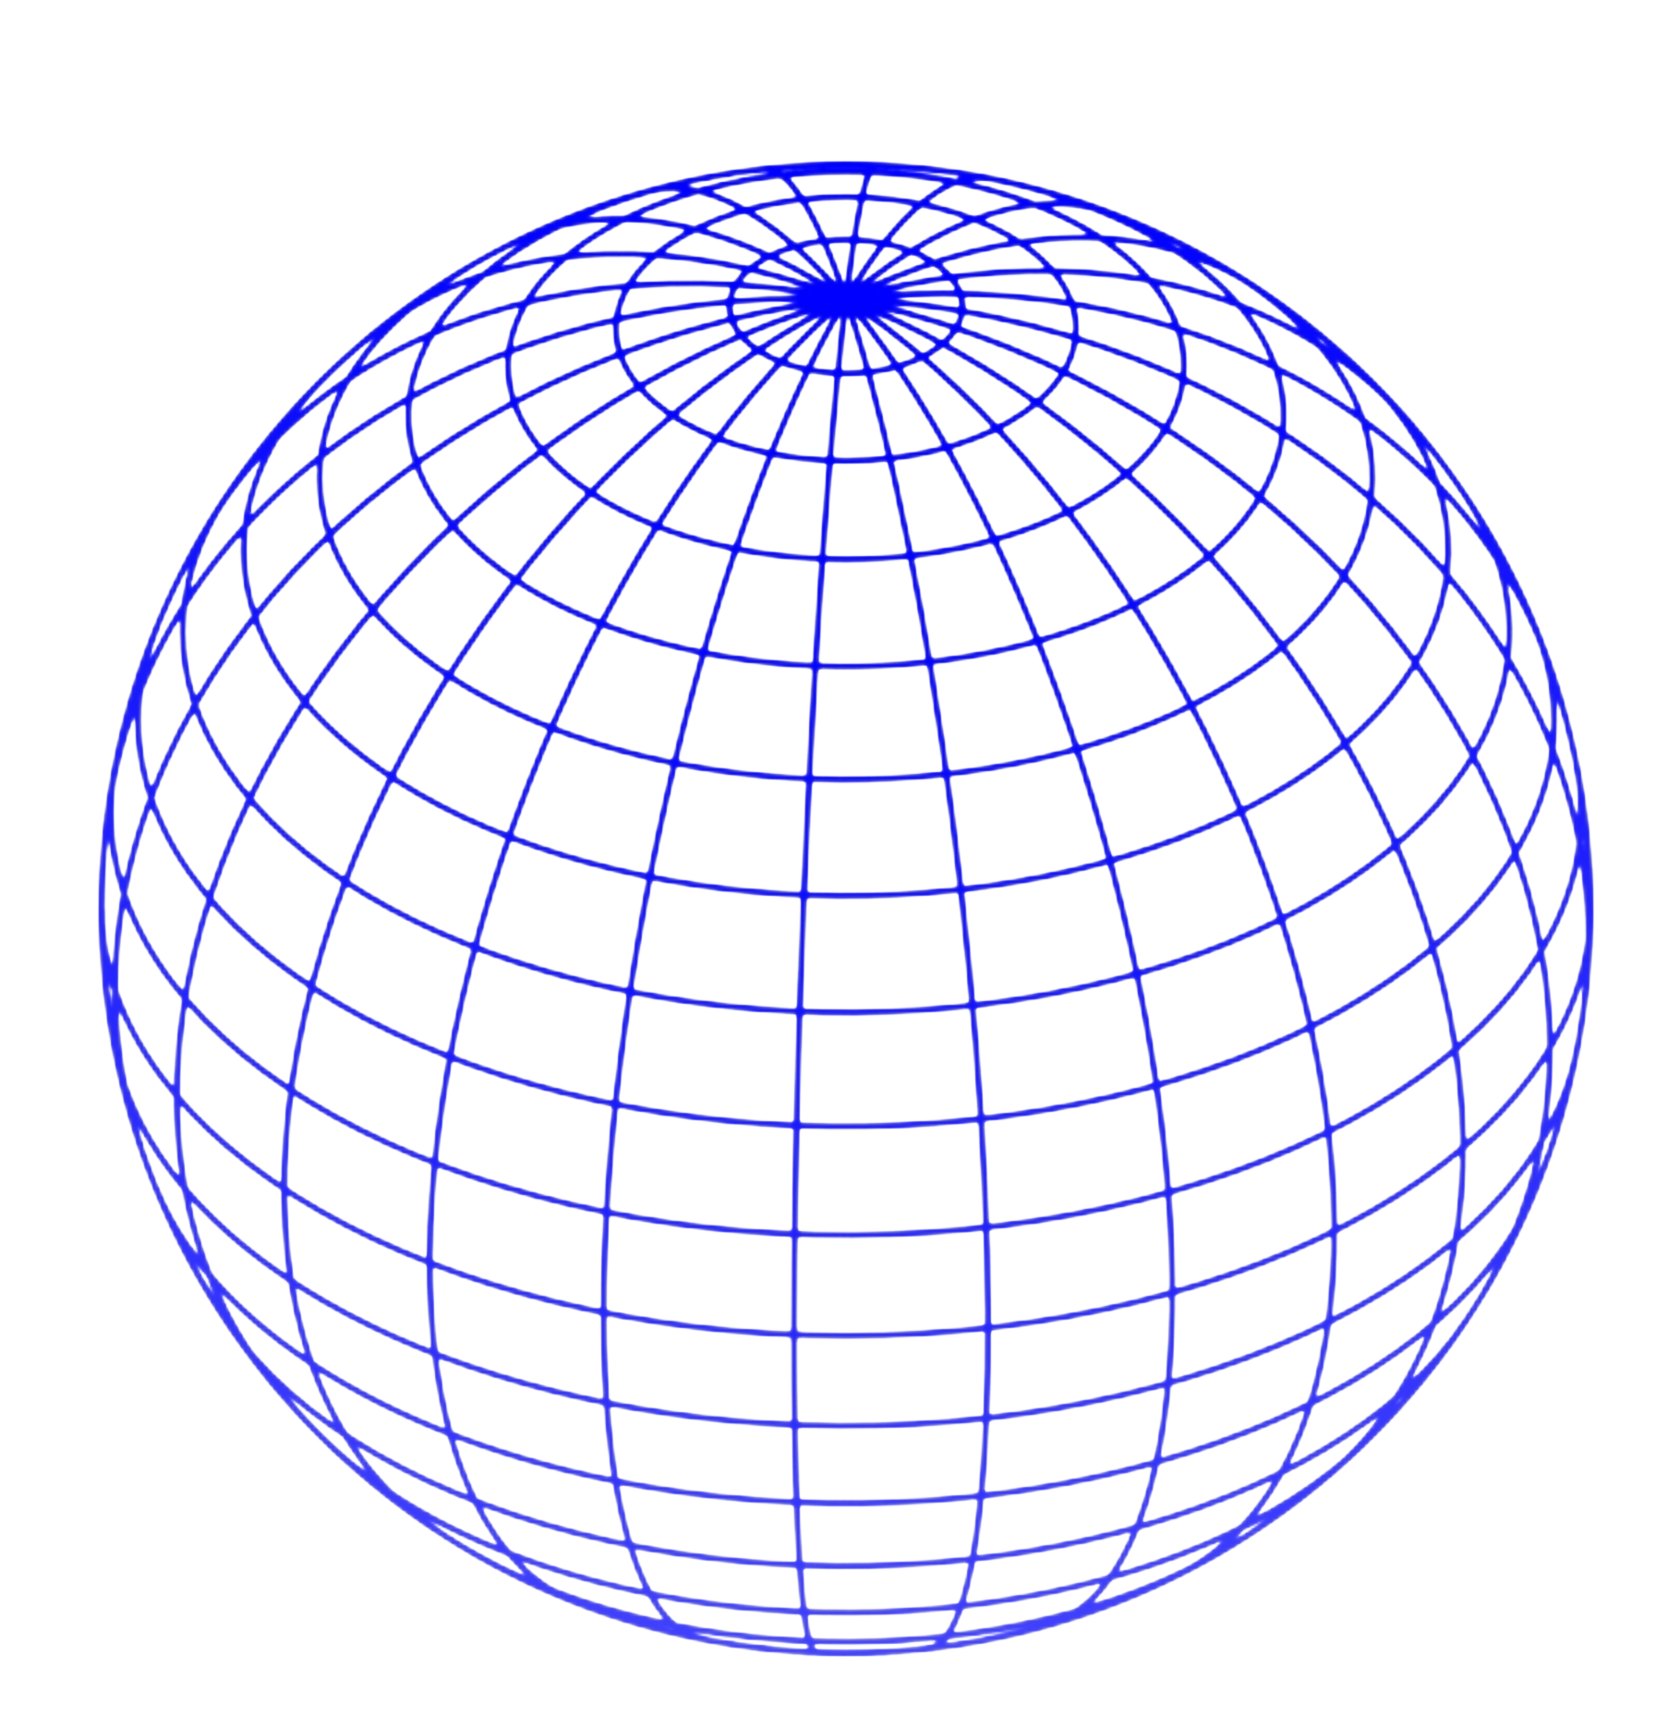 Сетка на шаре. Земной шар с меридианами. Координатная сетка на глобусе. Сетчатый шар. Сфера без фона.